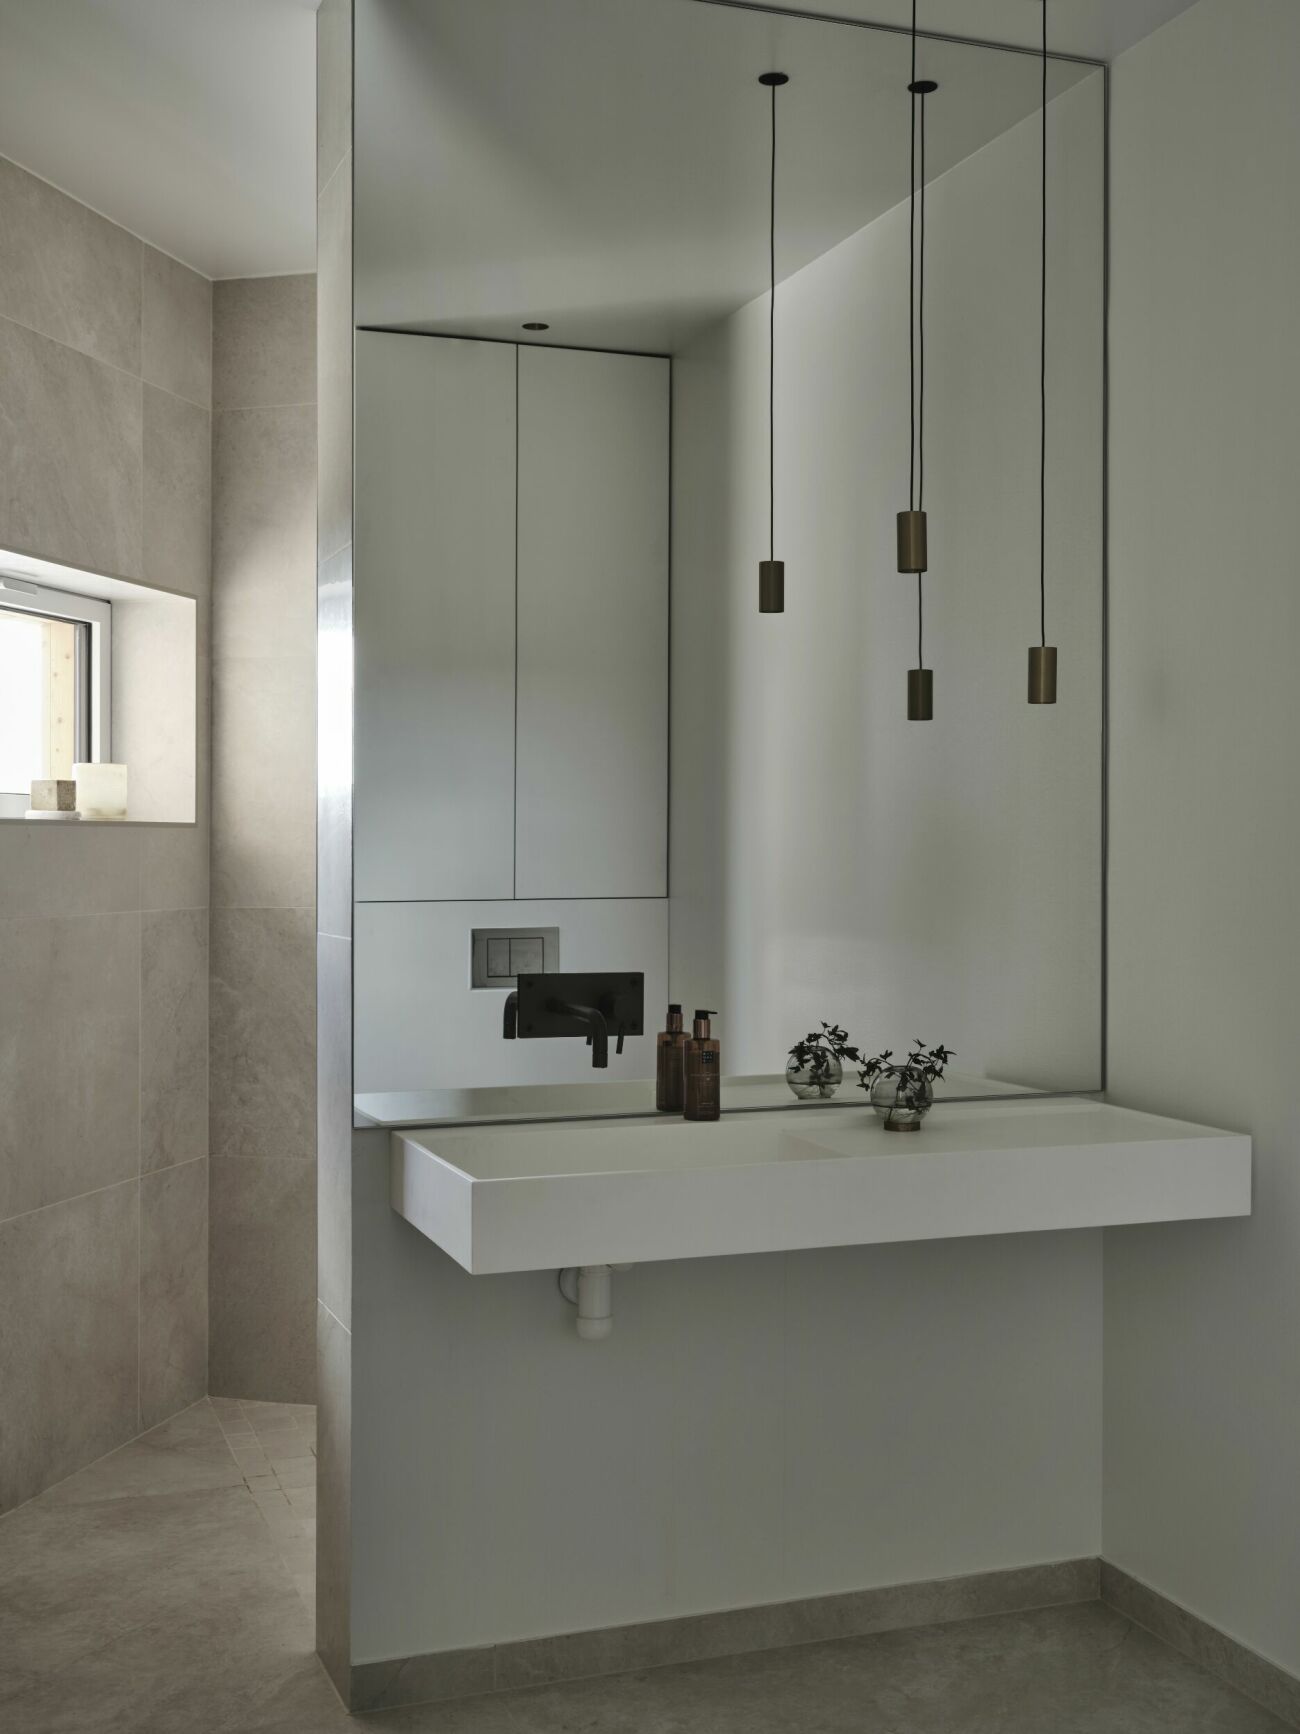 Badrum i modern och minimalistisk tappning.